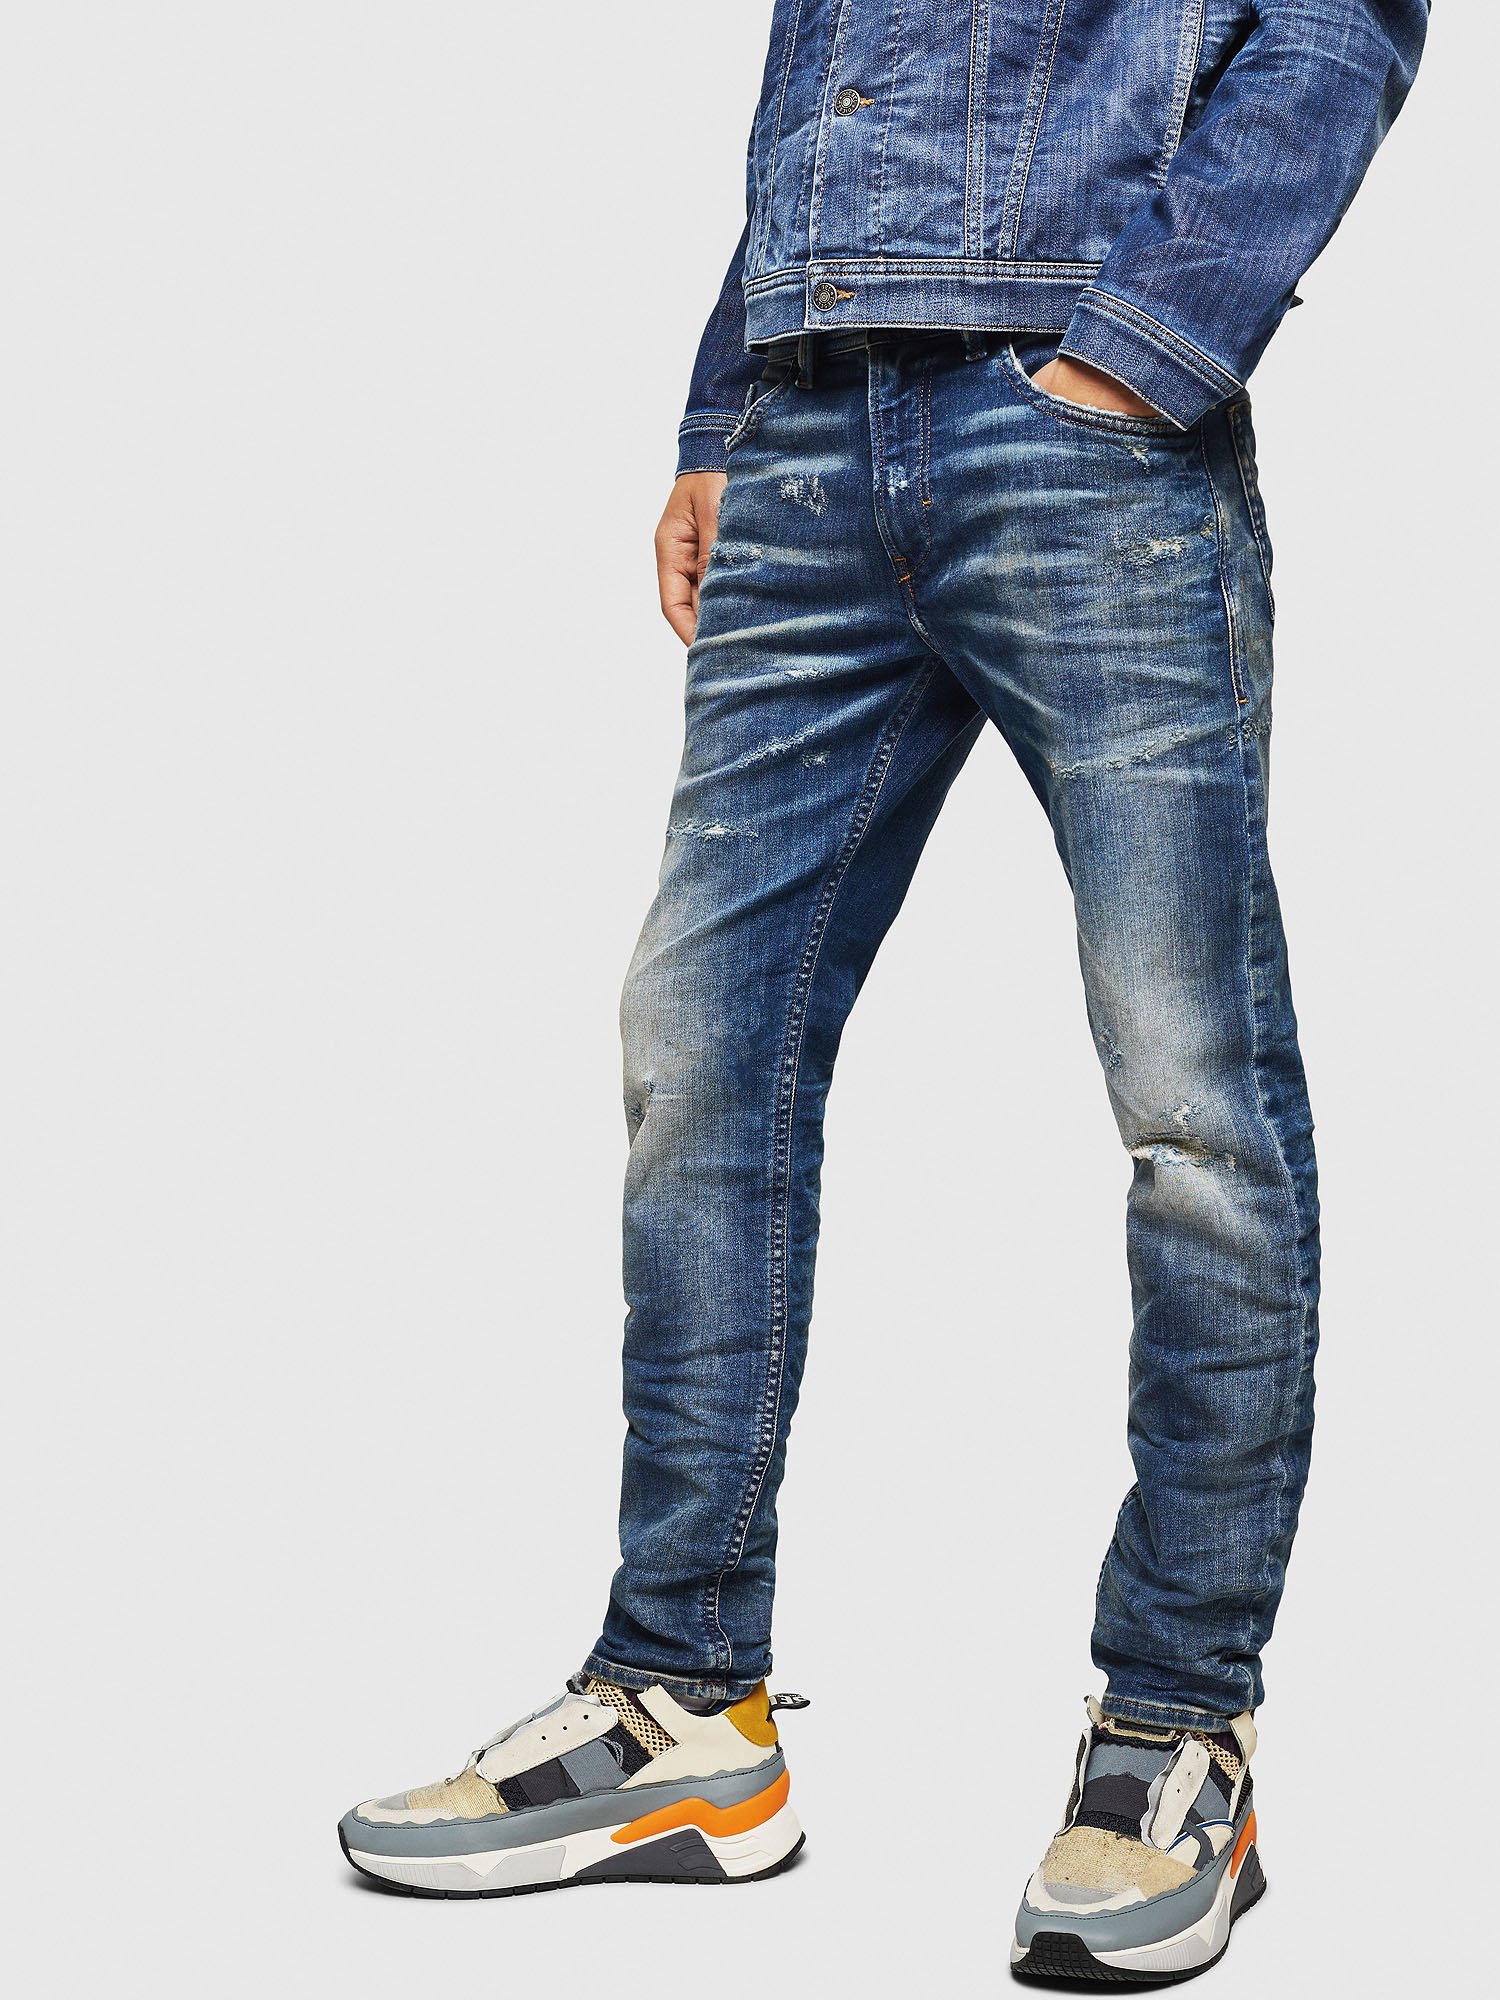 THOMMER-T JOGGJEANS 0870Q Men: Slim Medium blue Jeans | Diesel